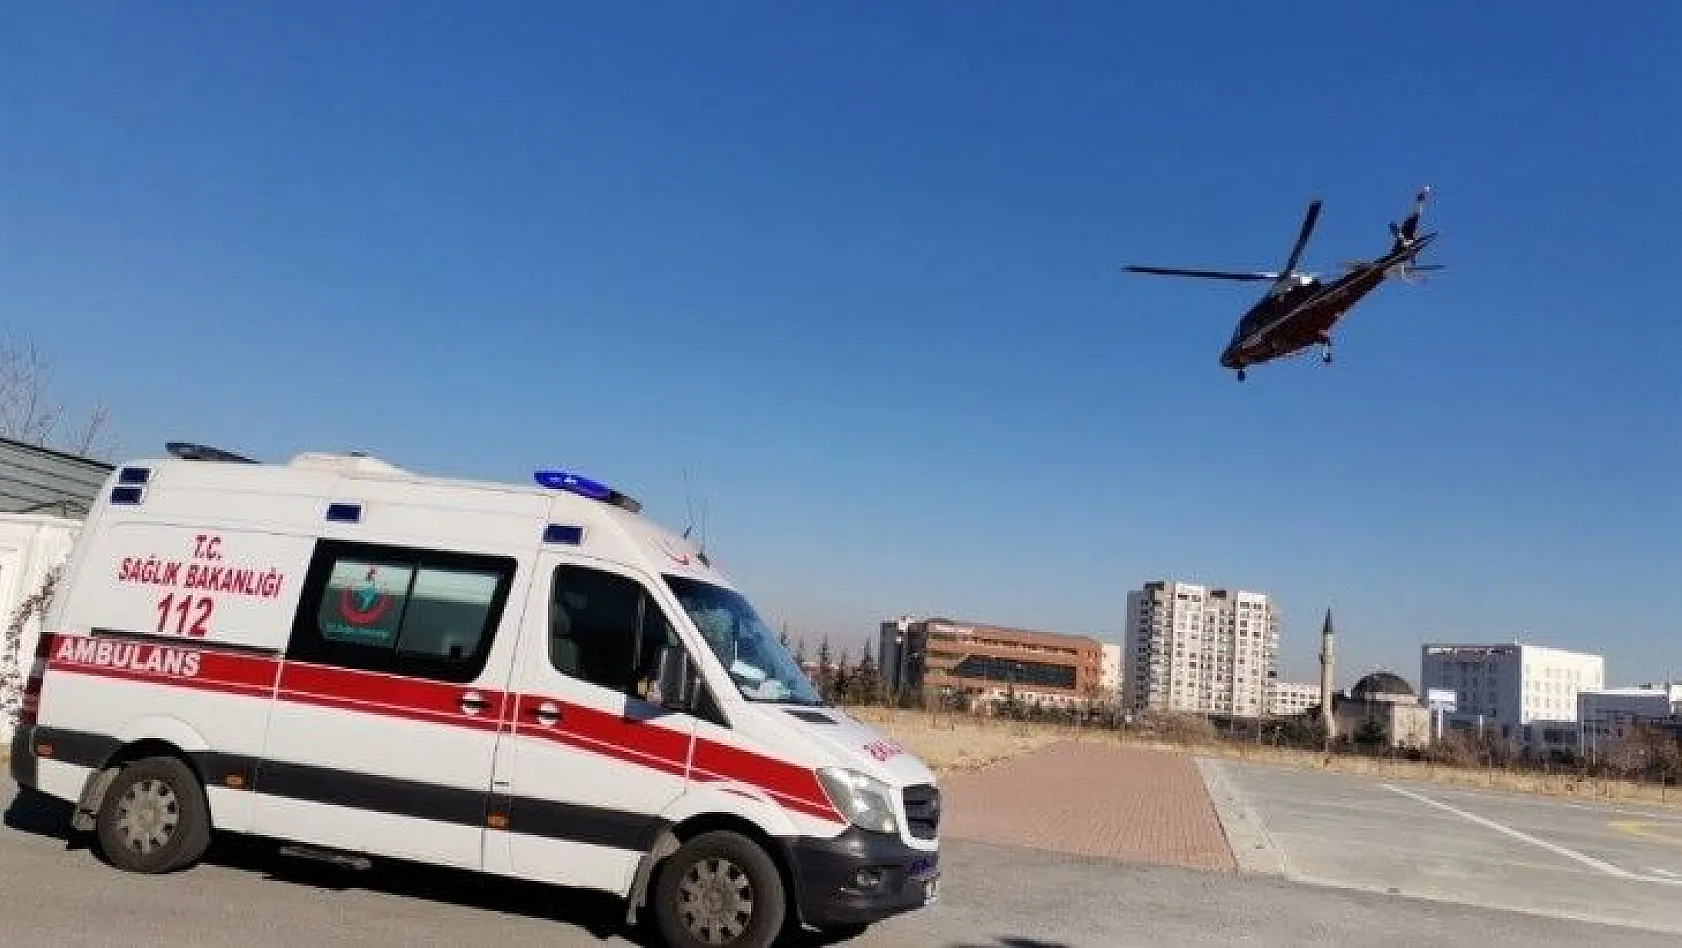 Kalp krizi geçiren yaşlı kadın ambulans helikopterle şehir merkezine getirildi